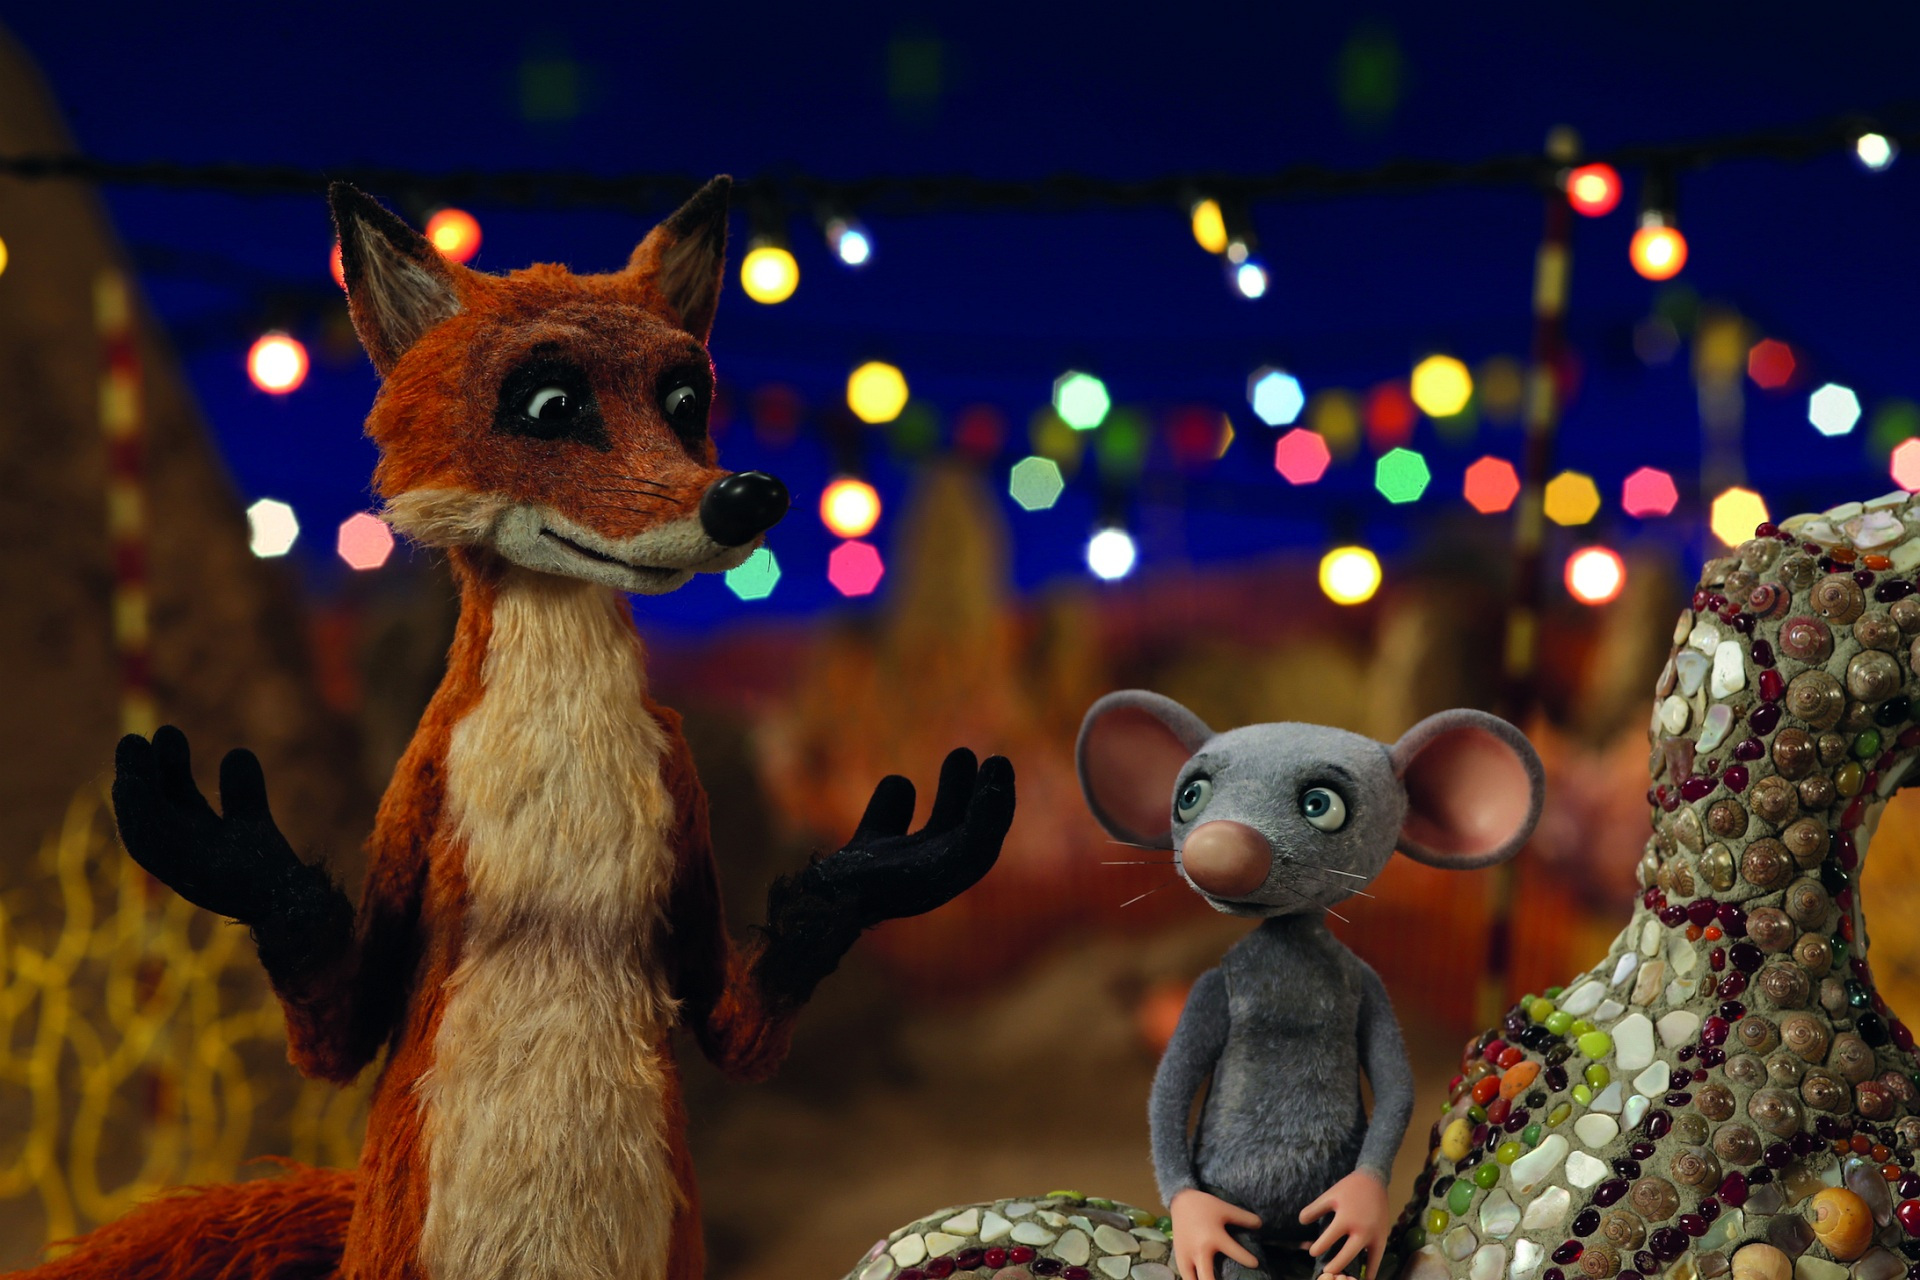 Animation von einer Maus und einem Fuchs, die in ein Gespräch sind. Im Hintergrund sieht man den Nachthimmel und bunt leuchtende Lichterketten.